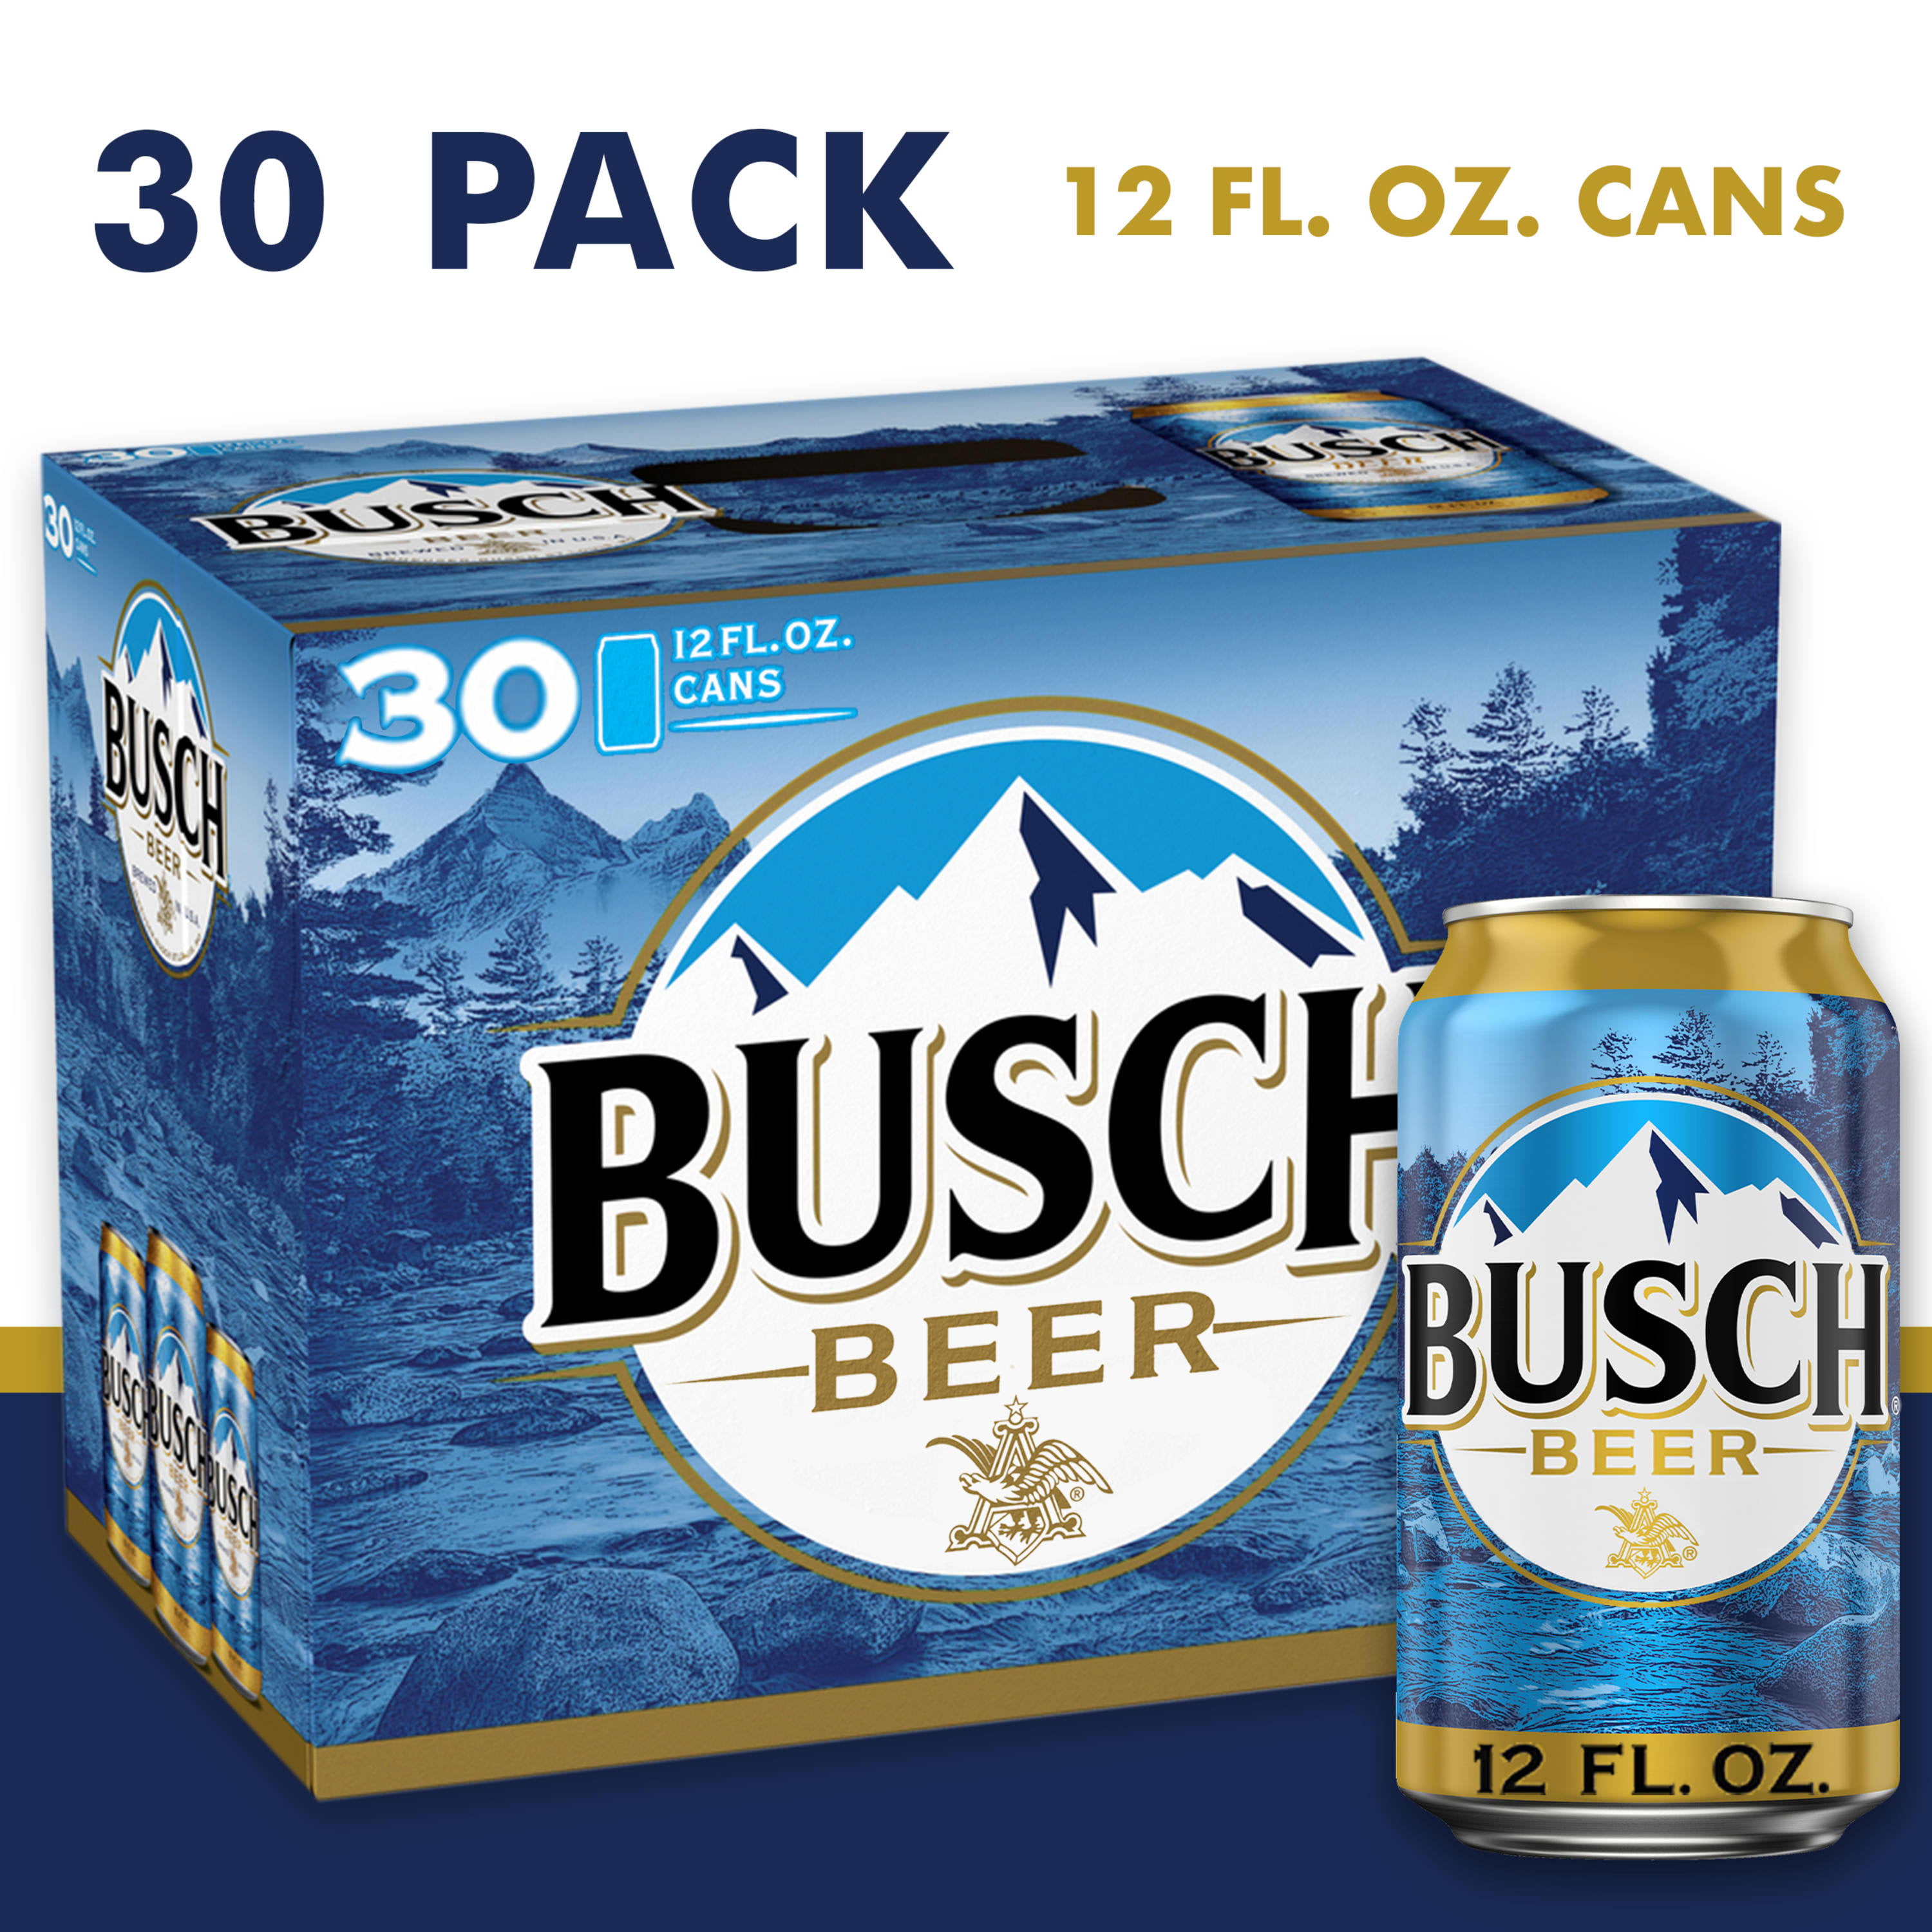 SANITIZED & Clean Retro Busch Light Beer Bottle Caps Excellent Condition. 